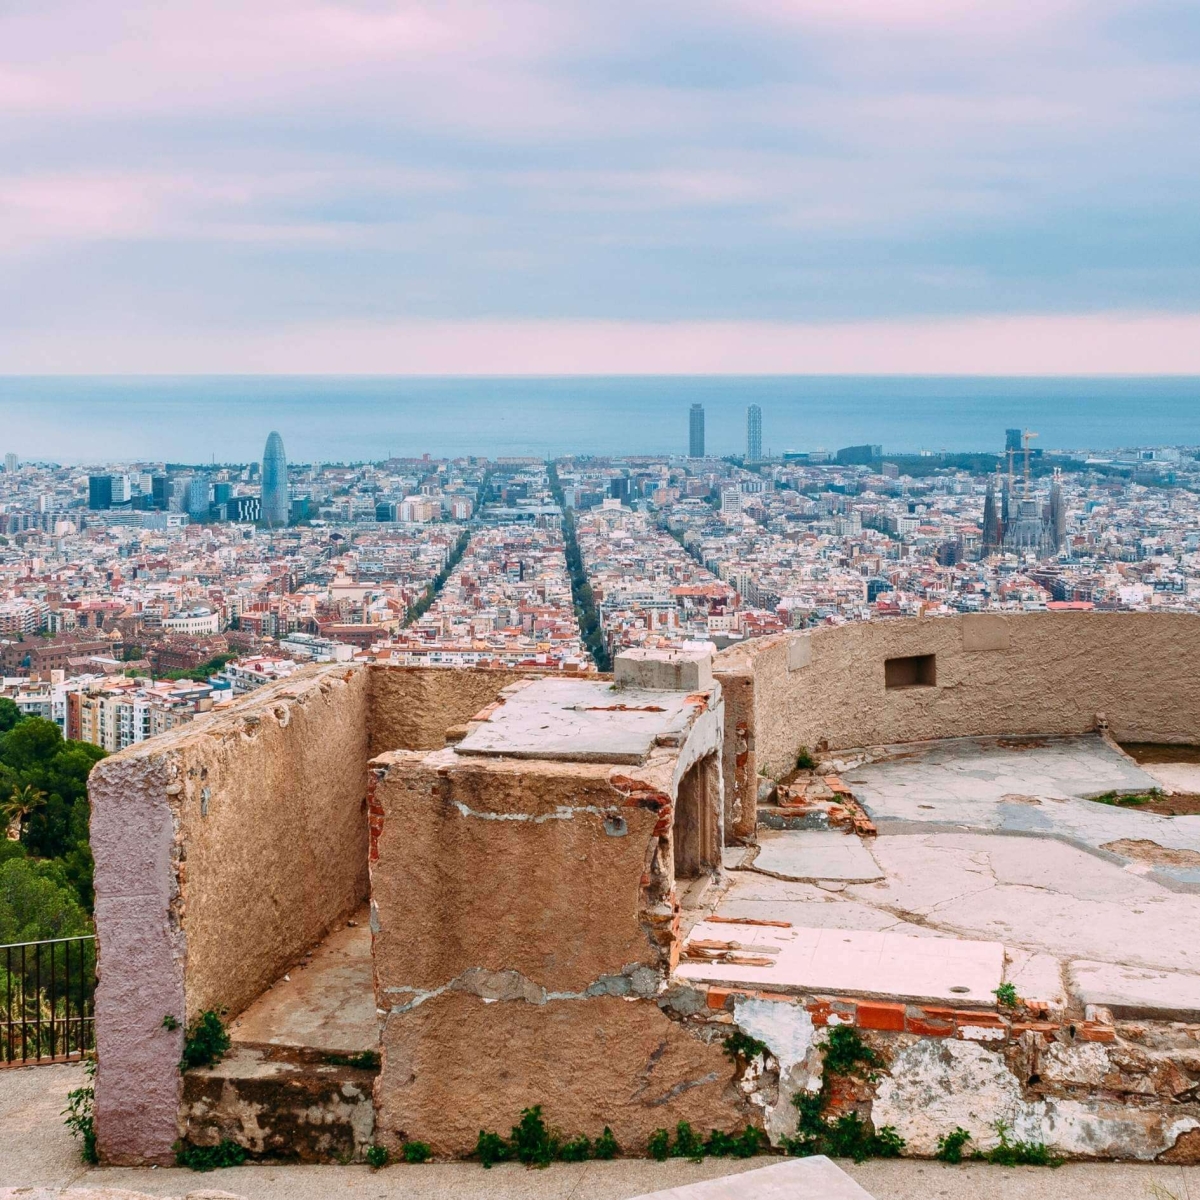 Вид на Барселону с высоты птичьего полета из бункеров дель Кармель или Туро де ла Ровира.